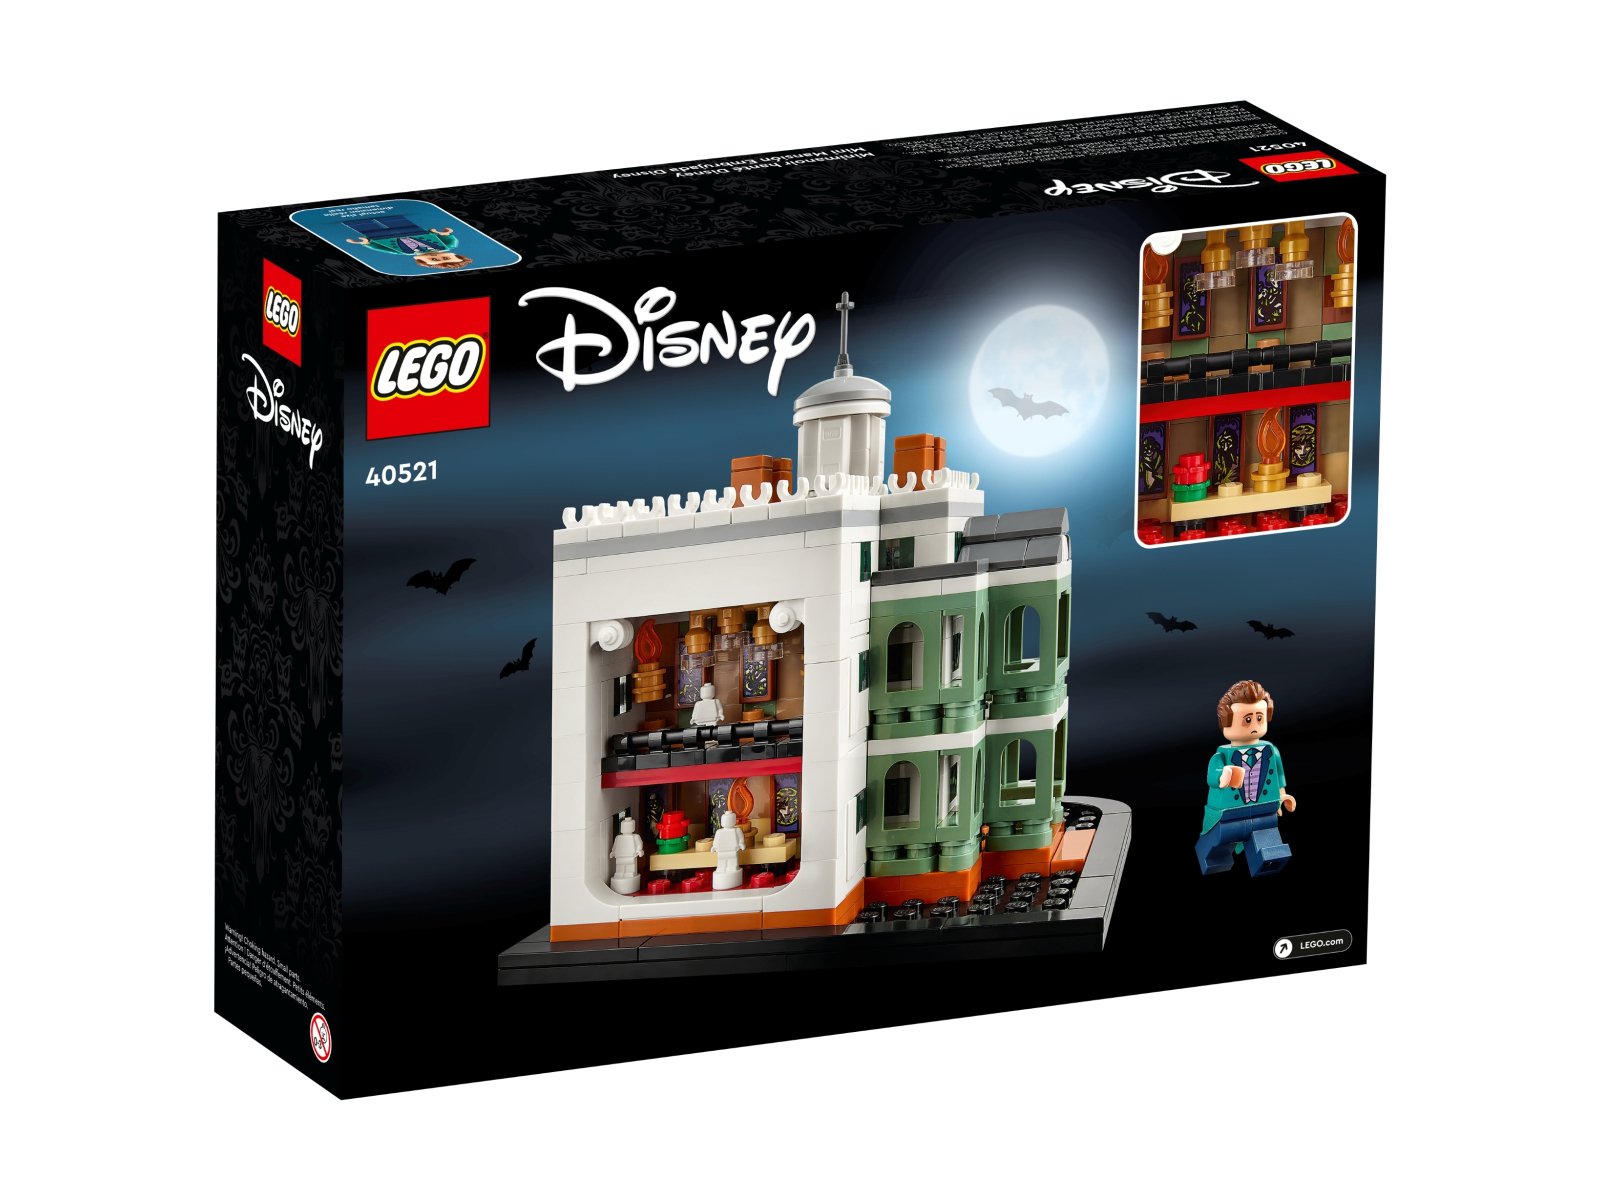 LEGO Disney 40521 Miniaturowa nawiedzona rezydencja Disneya